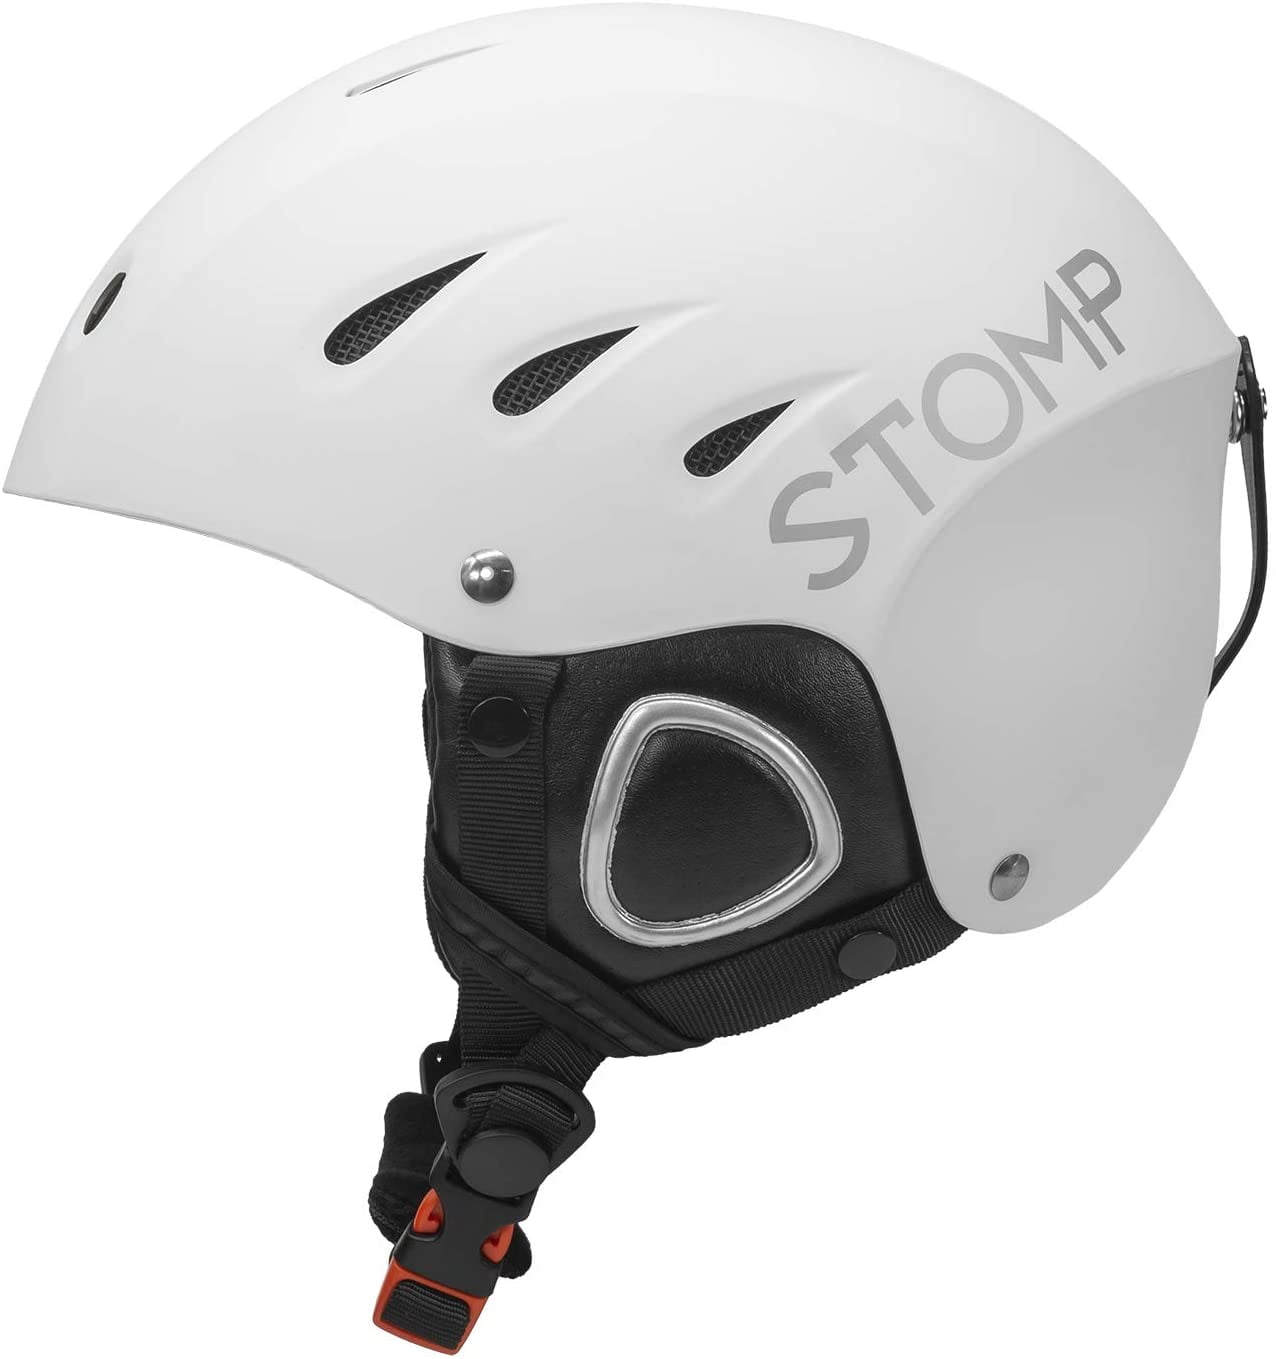 Unisex Ski Snowboard Helmet Ultralight Warm Windproof Snow Sports Helmet 